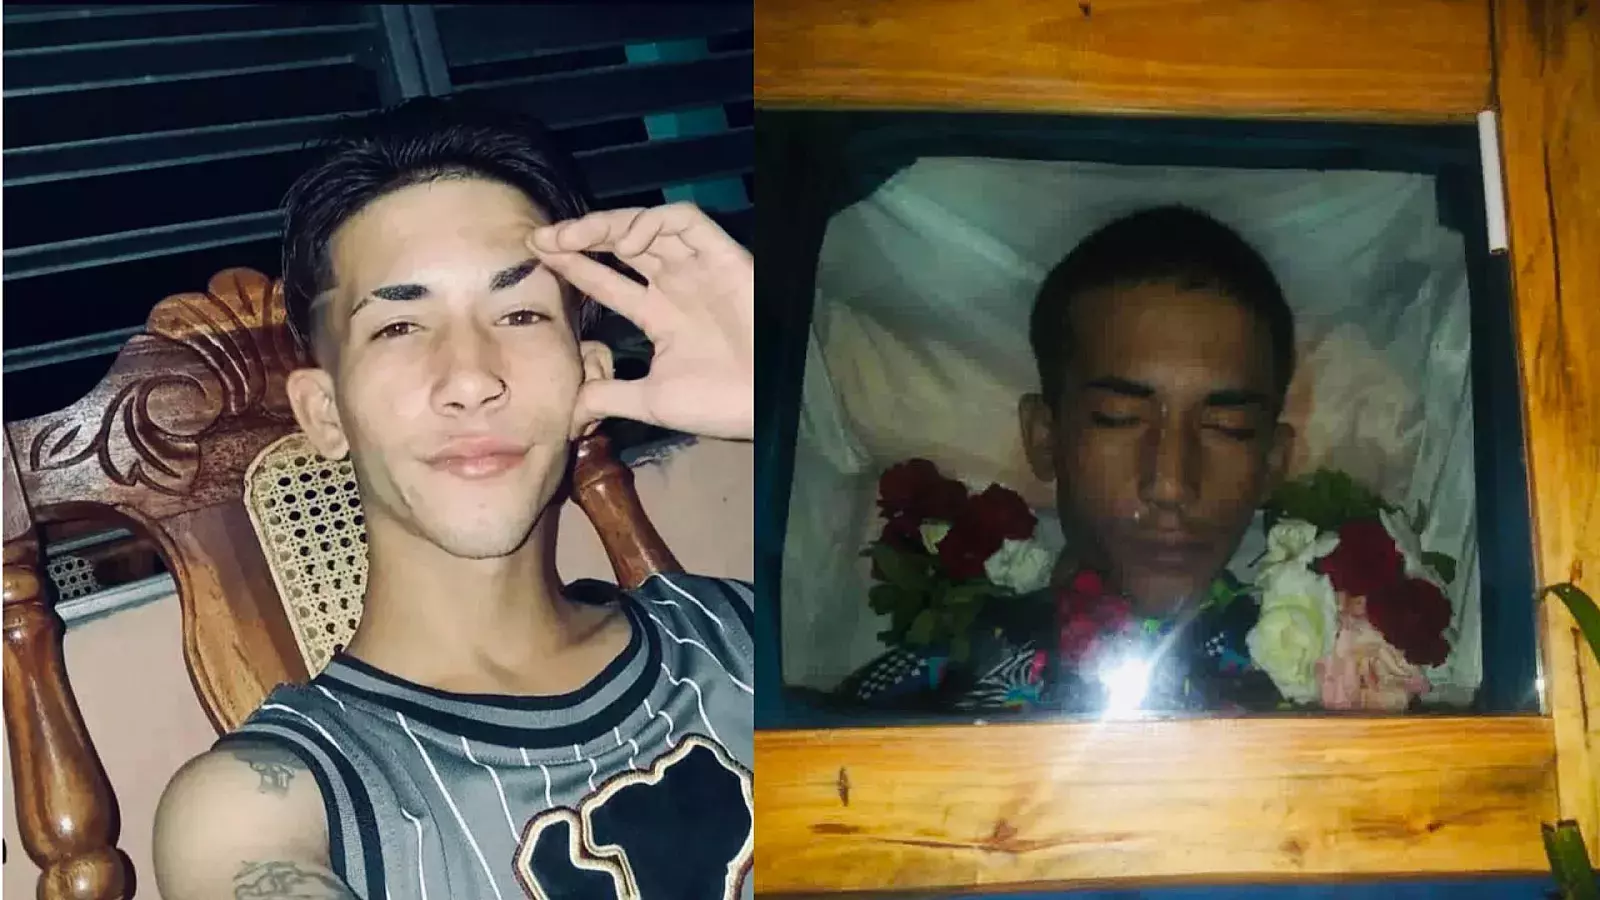 Joven preso de 19 años se suicida en cárcel de Cienfuegos